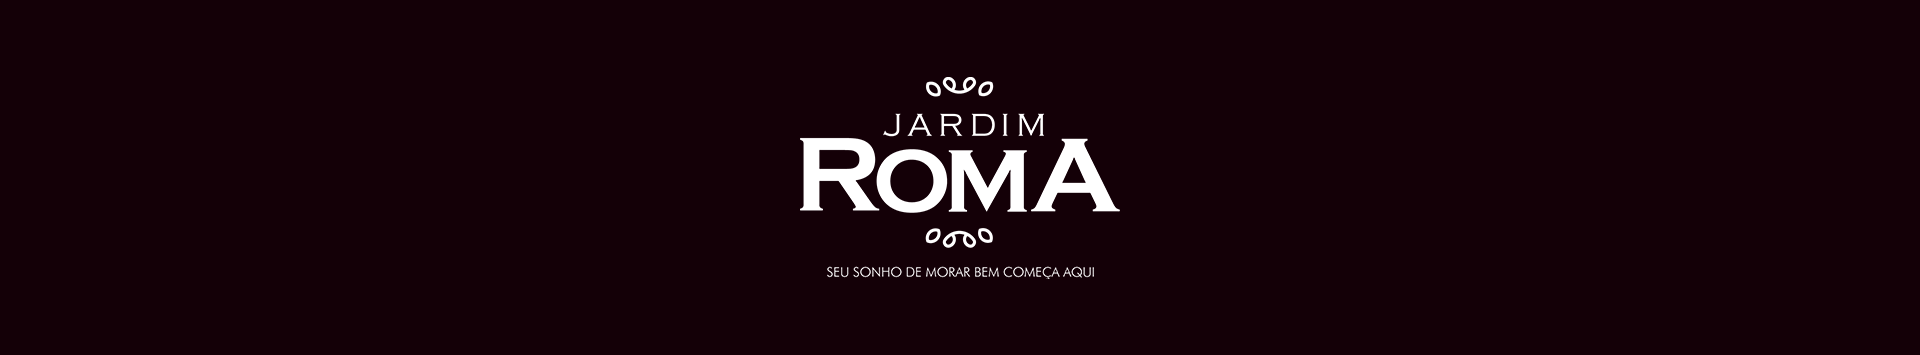 JARDIM ROMA